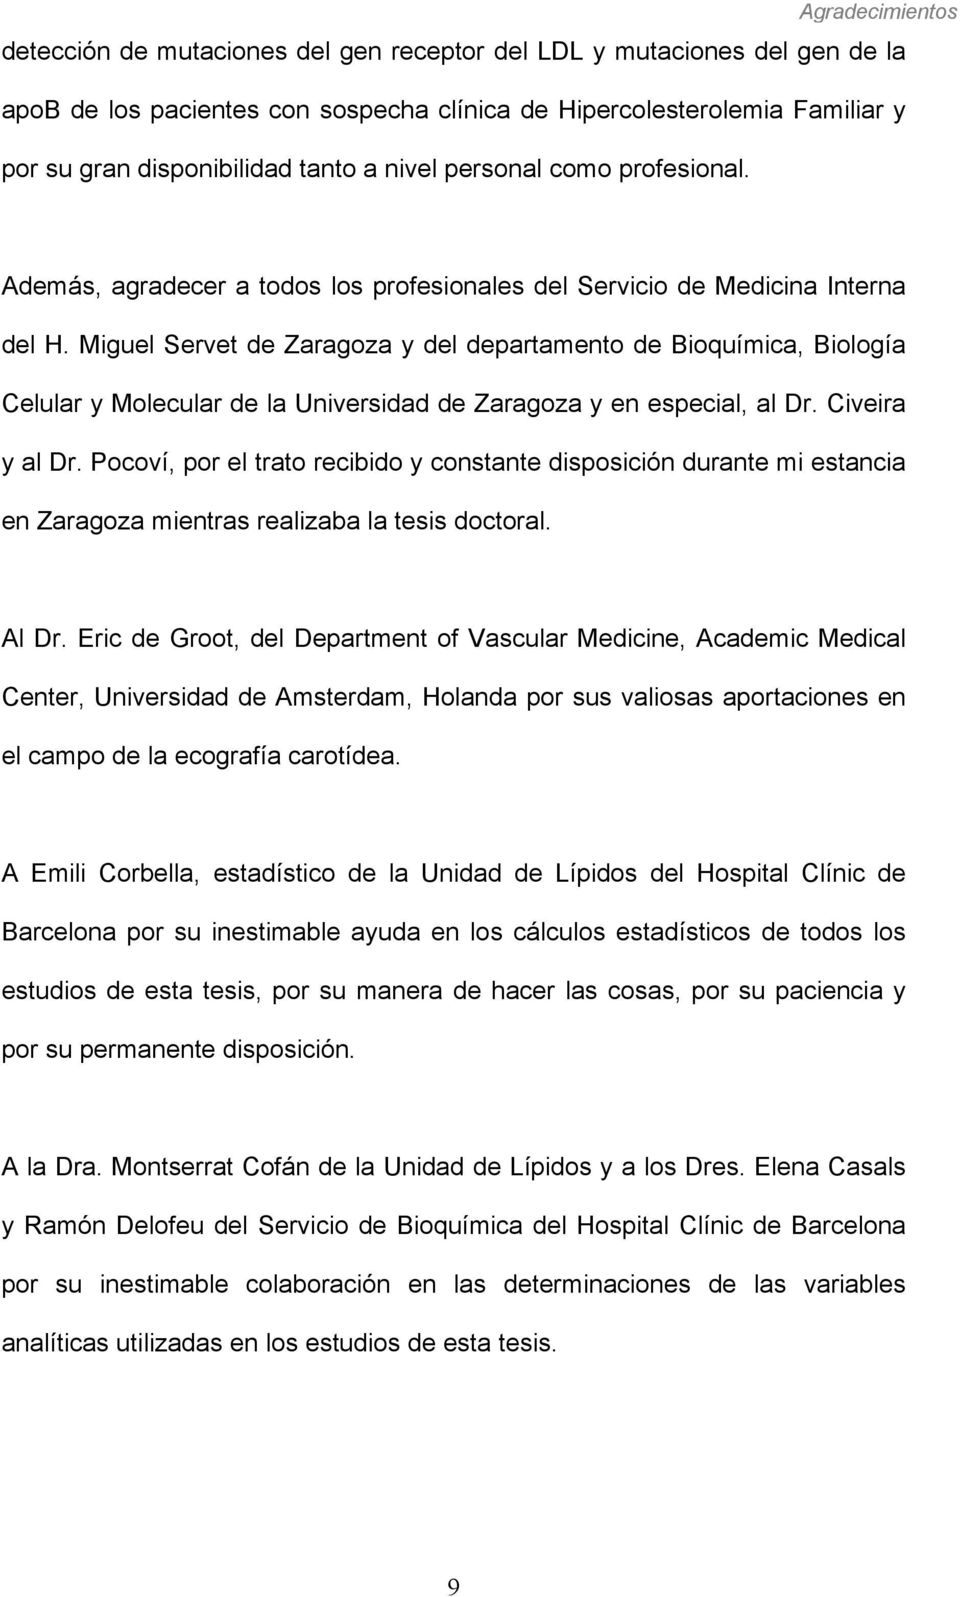 Miguel Servet de Zaragoza y del departamento de Bioquímica, Biología Celular y Molecular de la Universidad de Zaragoza y en especial, al Dr. Civeira y al Dr.